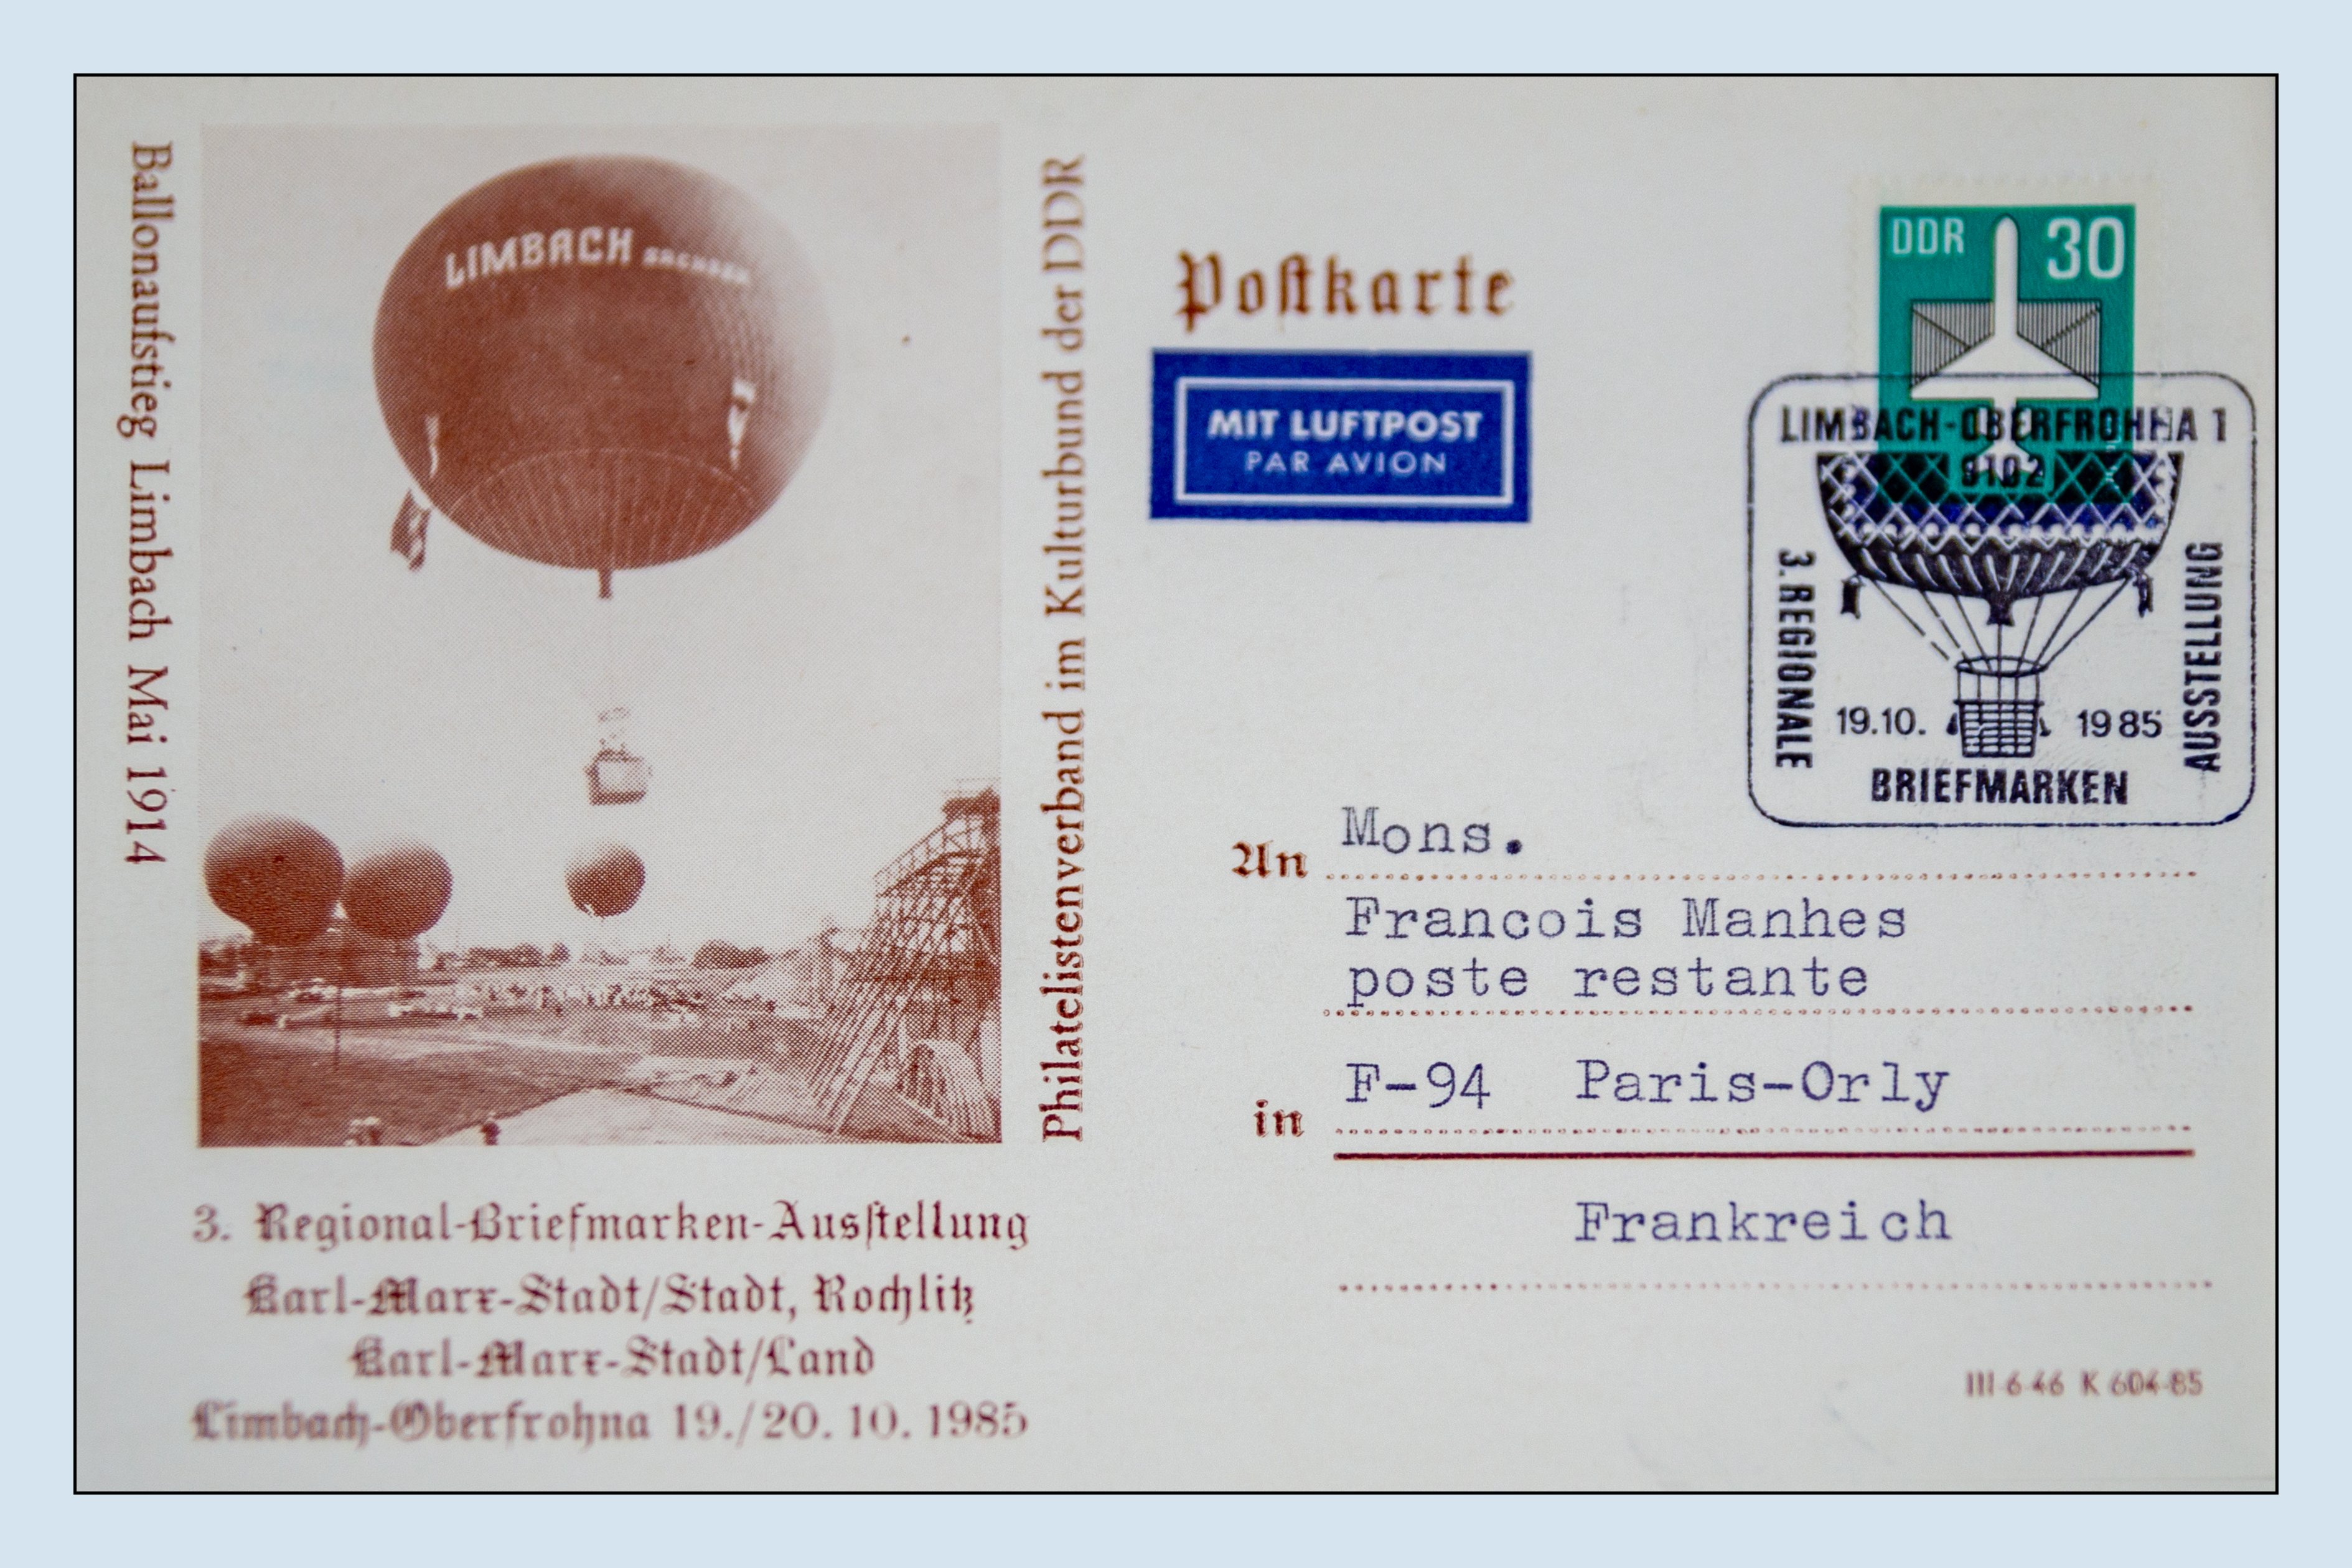 Ansichtskarte (Reprint) "Ballonaufstieg Limbach Mai 1914", Sonderstempel Limbach-Oberfrohna 1 3., Regionale Briefmarkenausstellung, Abb. Ballon, 19.10 (Verkehrsmuseum Dresden CC BY-NC-SA)